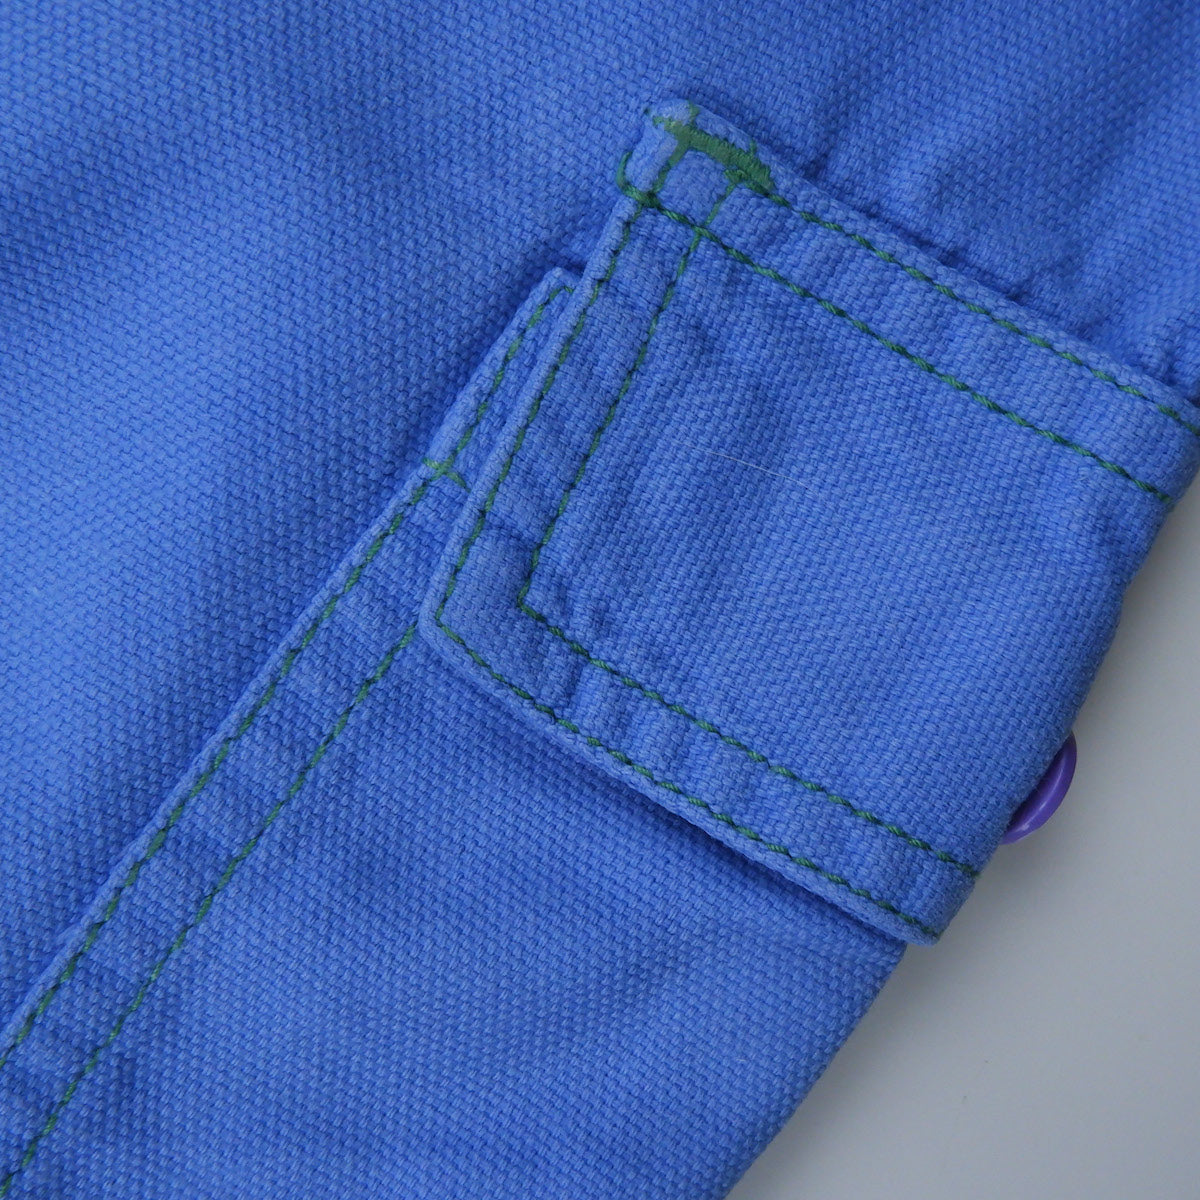 pantalon baggy vintage en toile bleue pour enfants